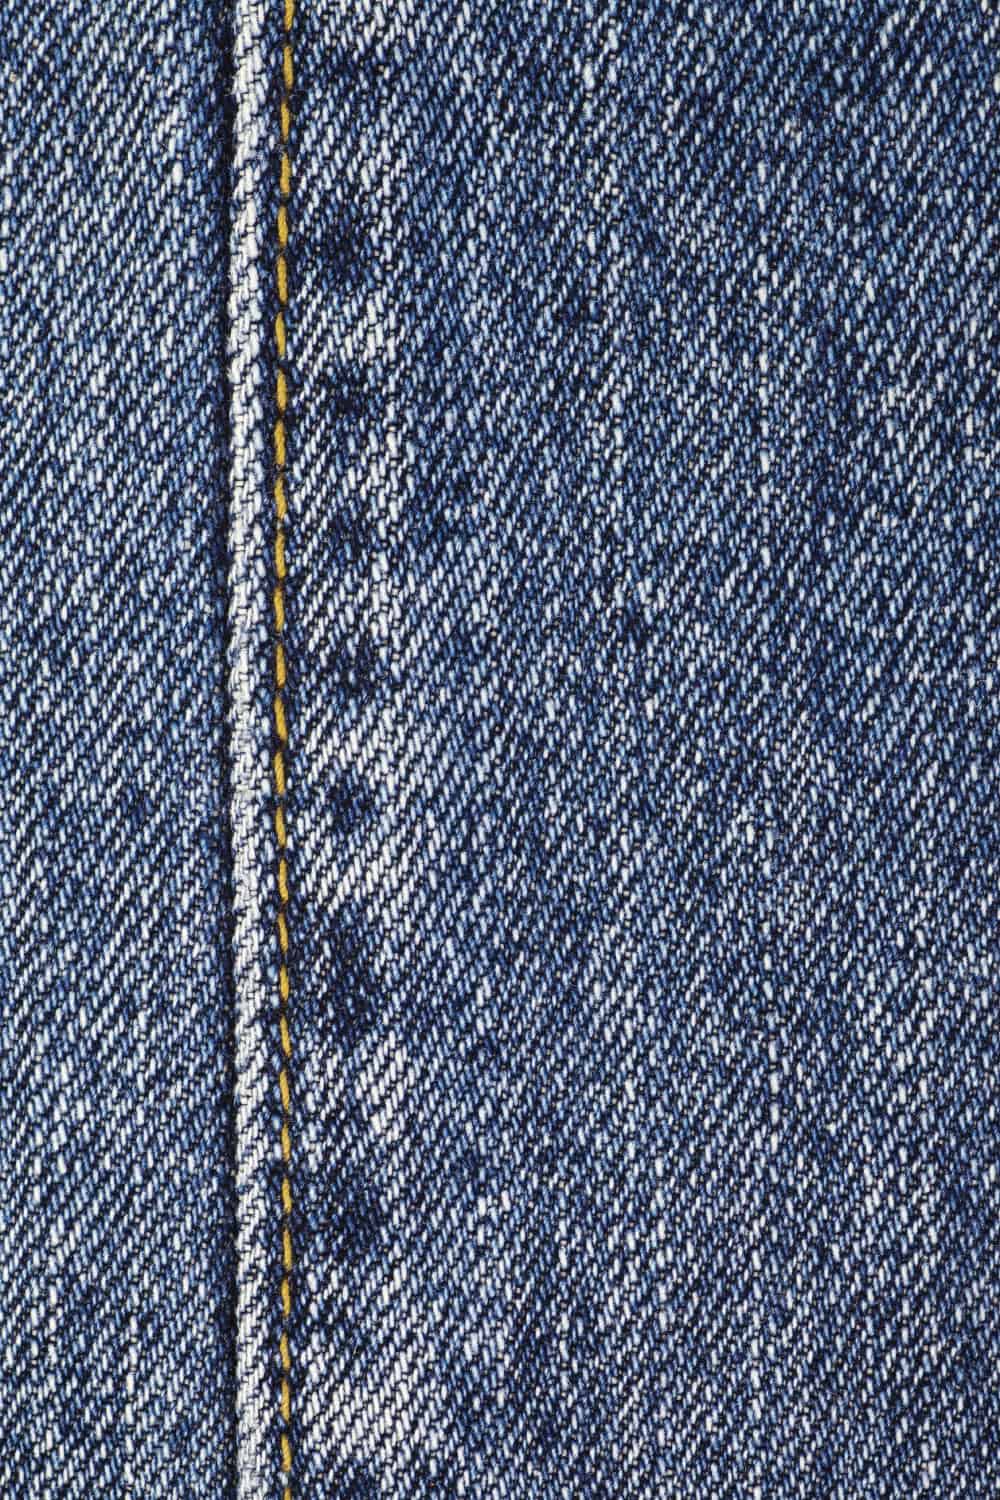 Part of a blue denim jeans